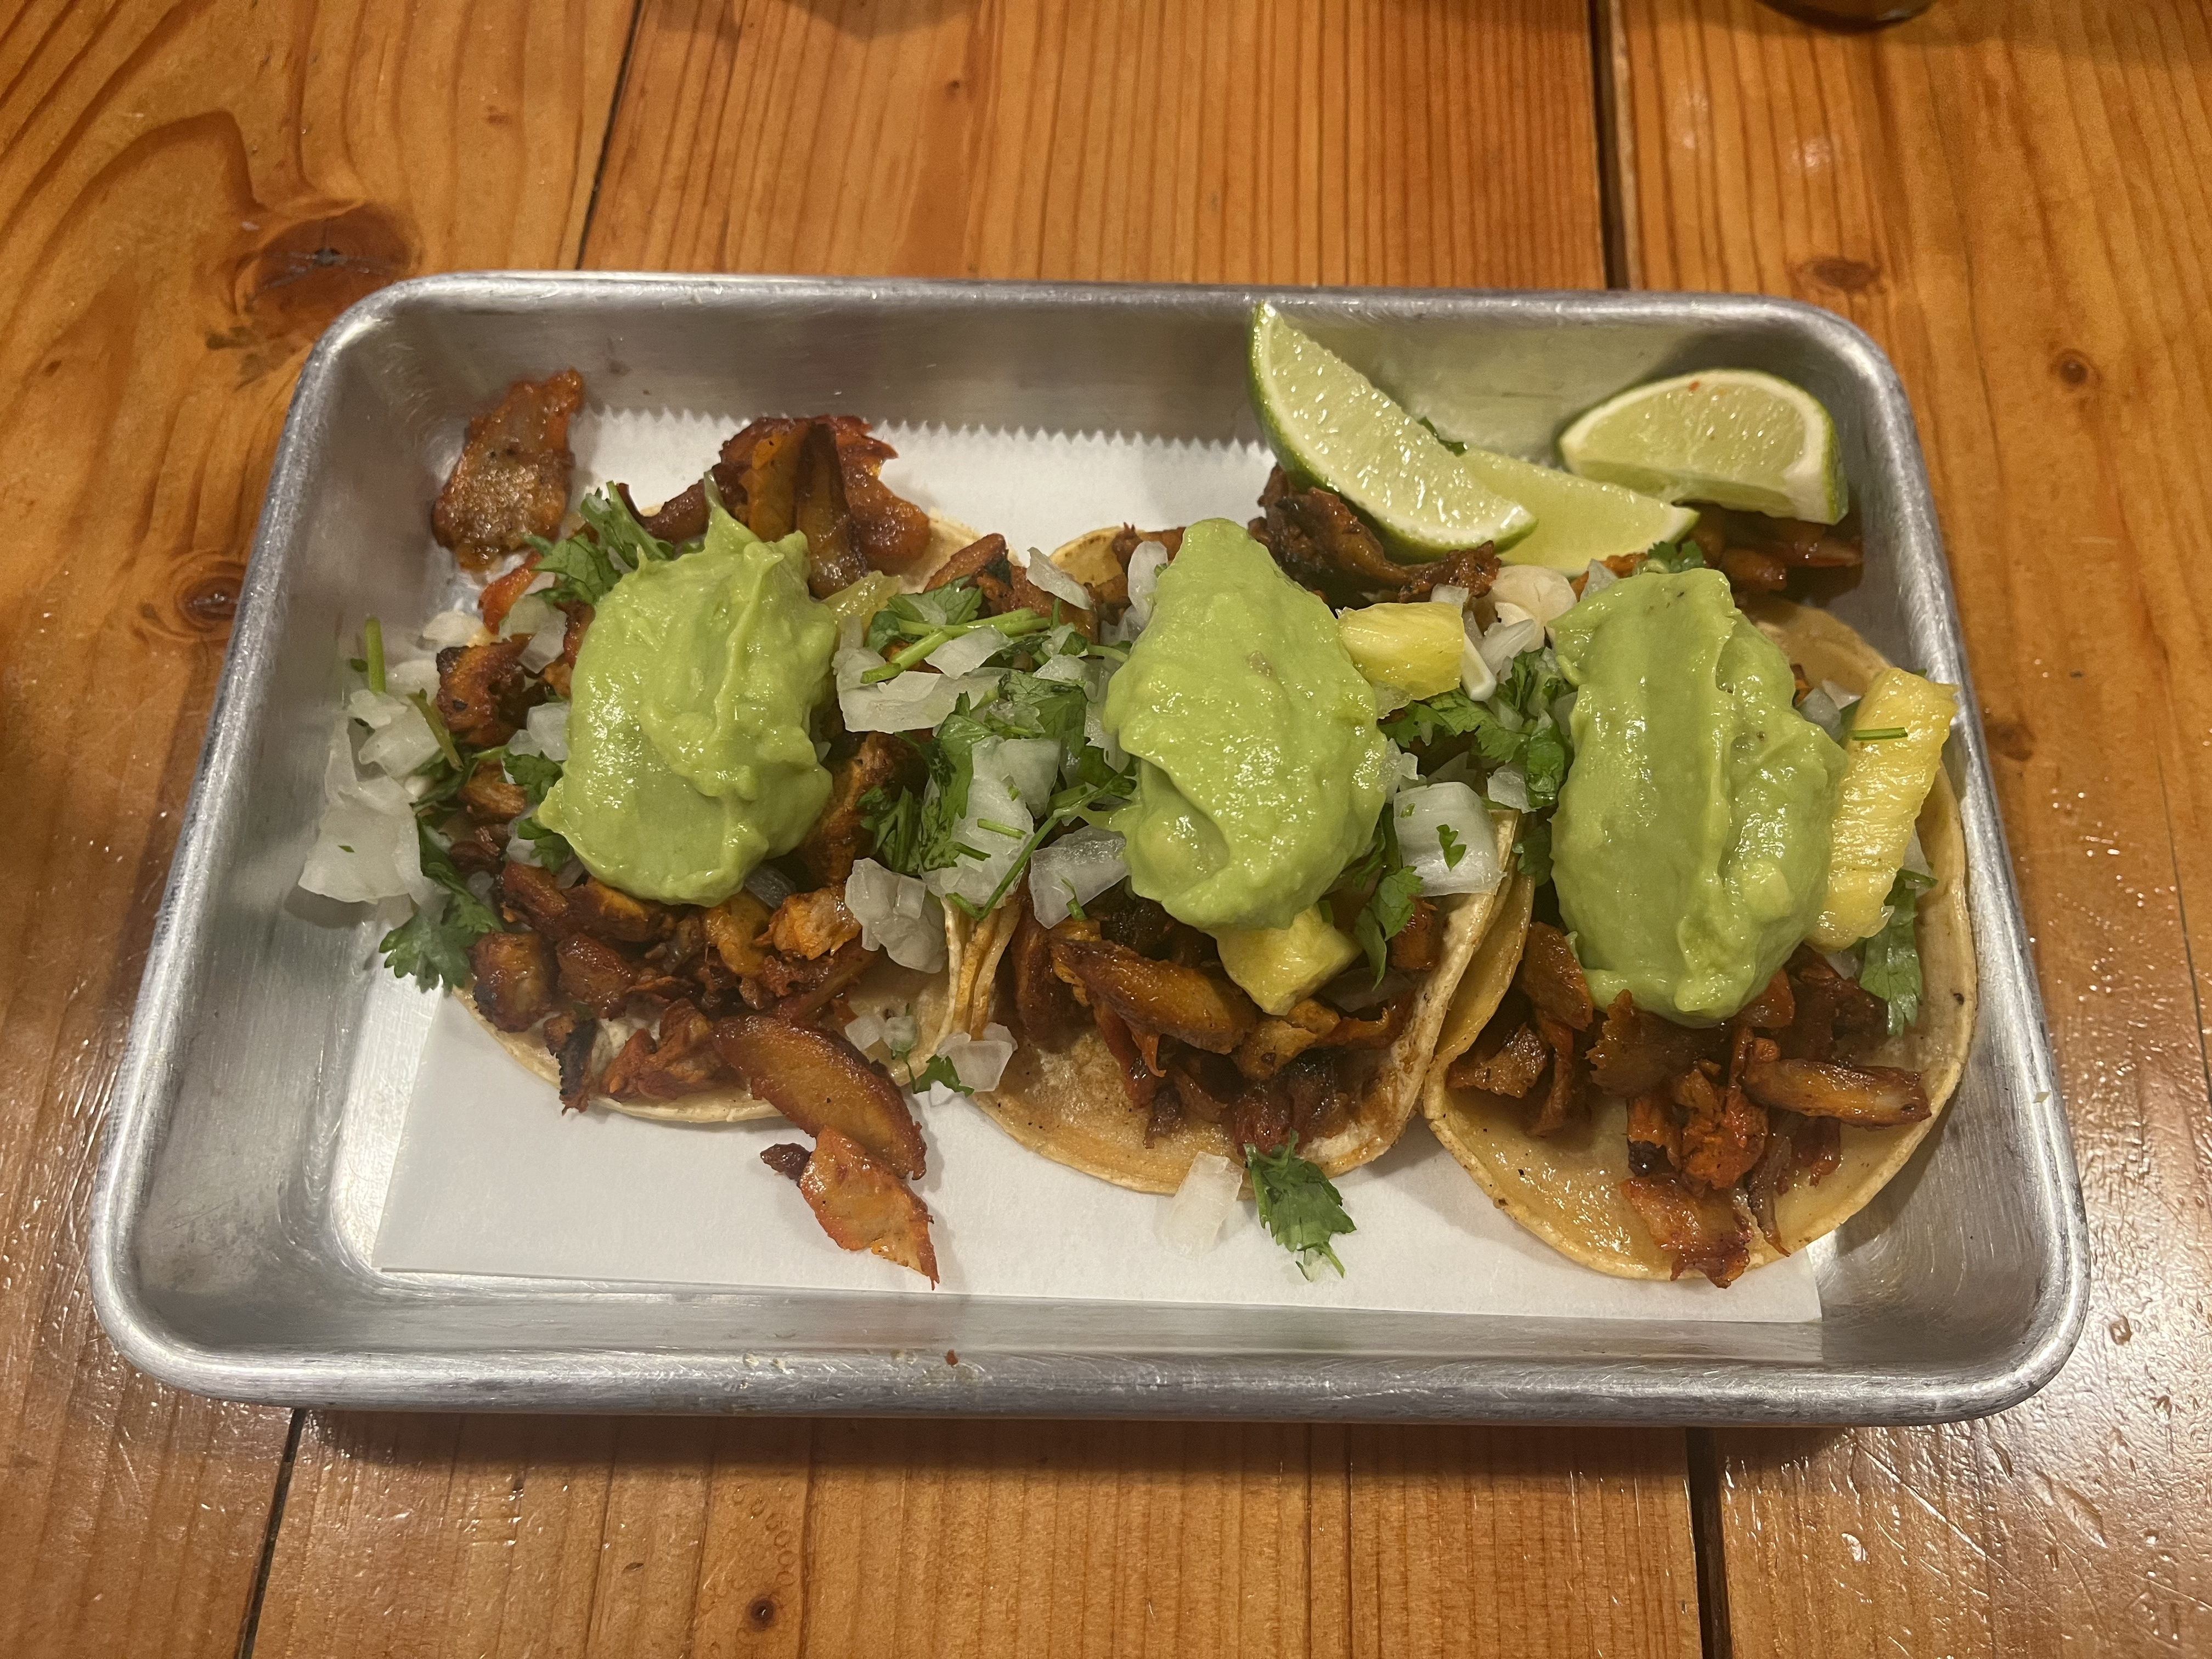 Al pastor tacos on a metal tray.